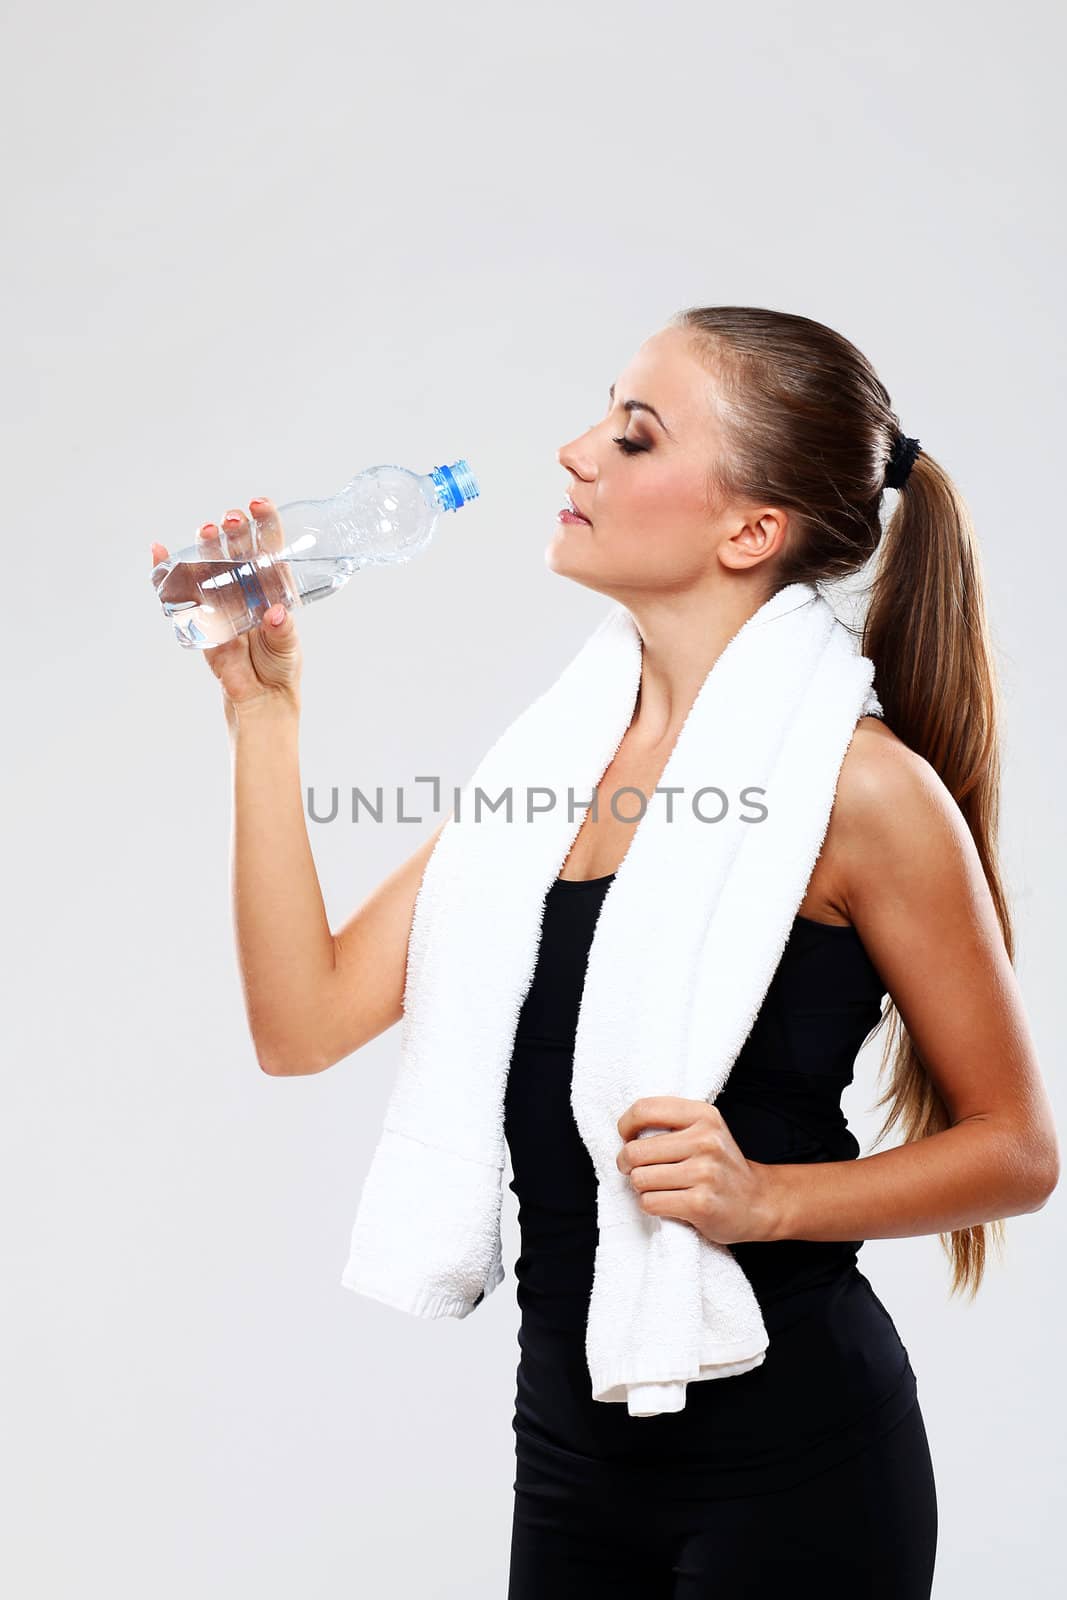 Beutiful fitness woman drink water by rufatjumali